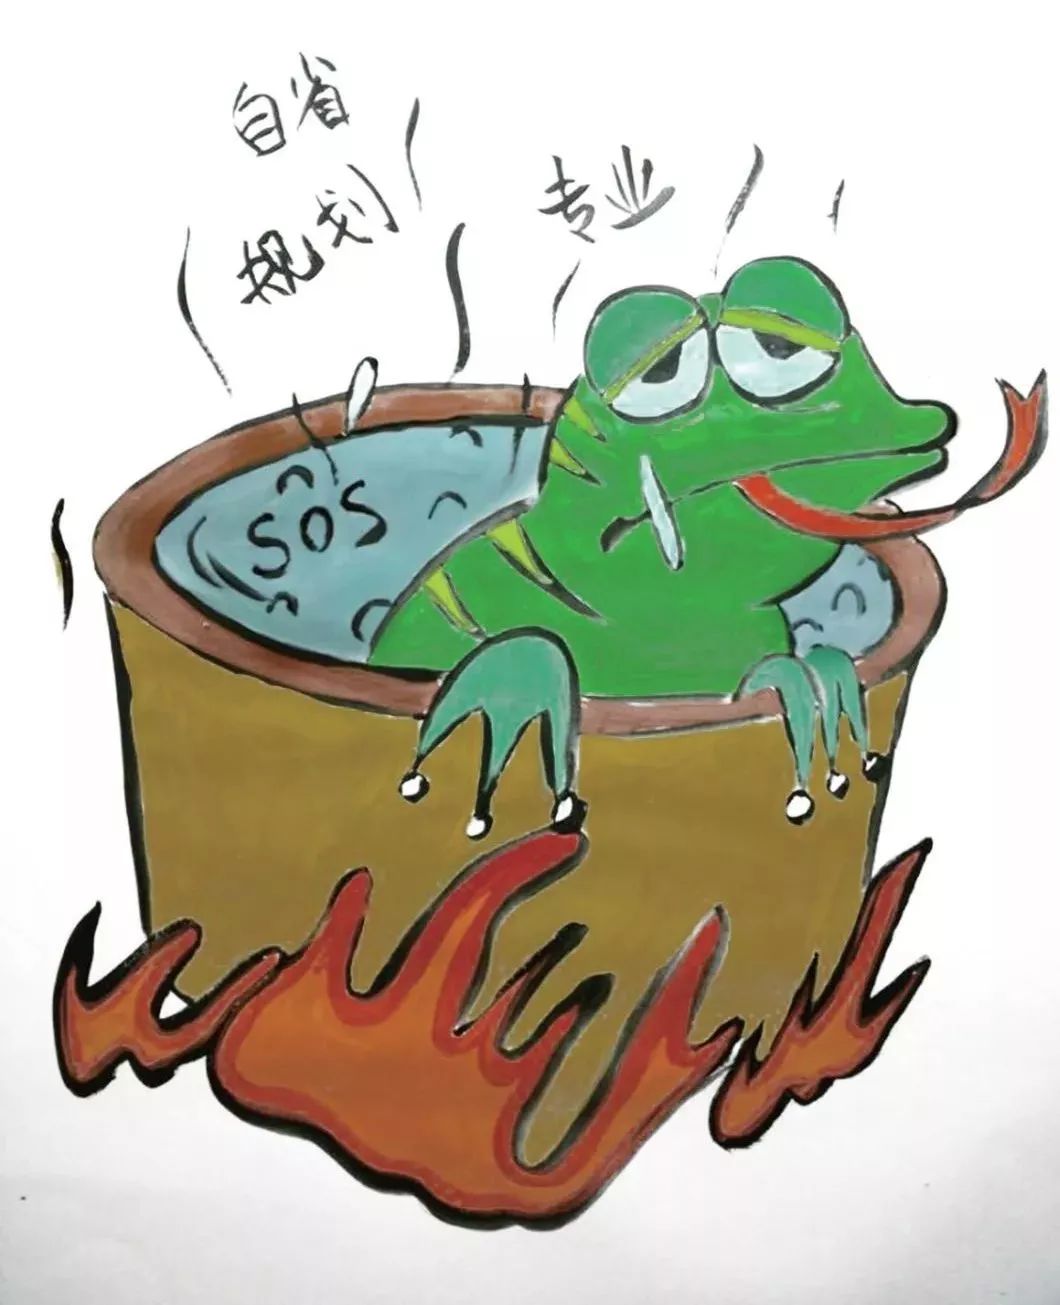 温水煮青蛙,是一个著名的故事.